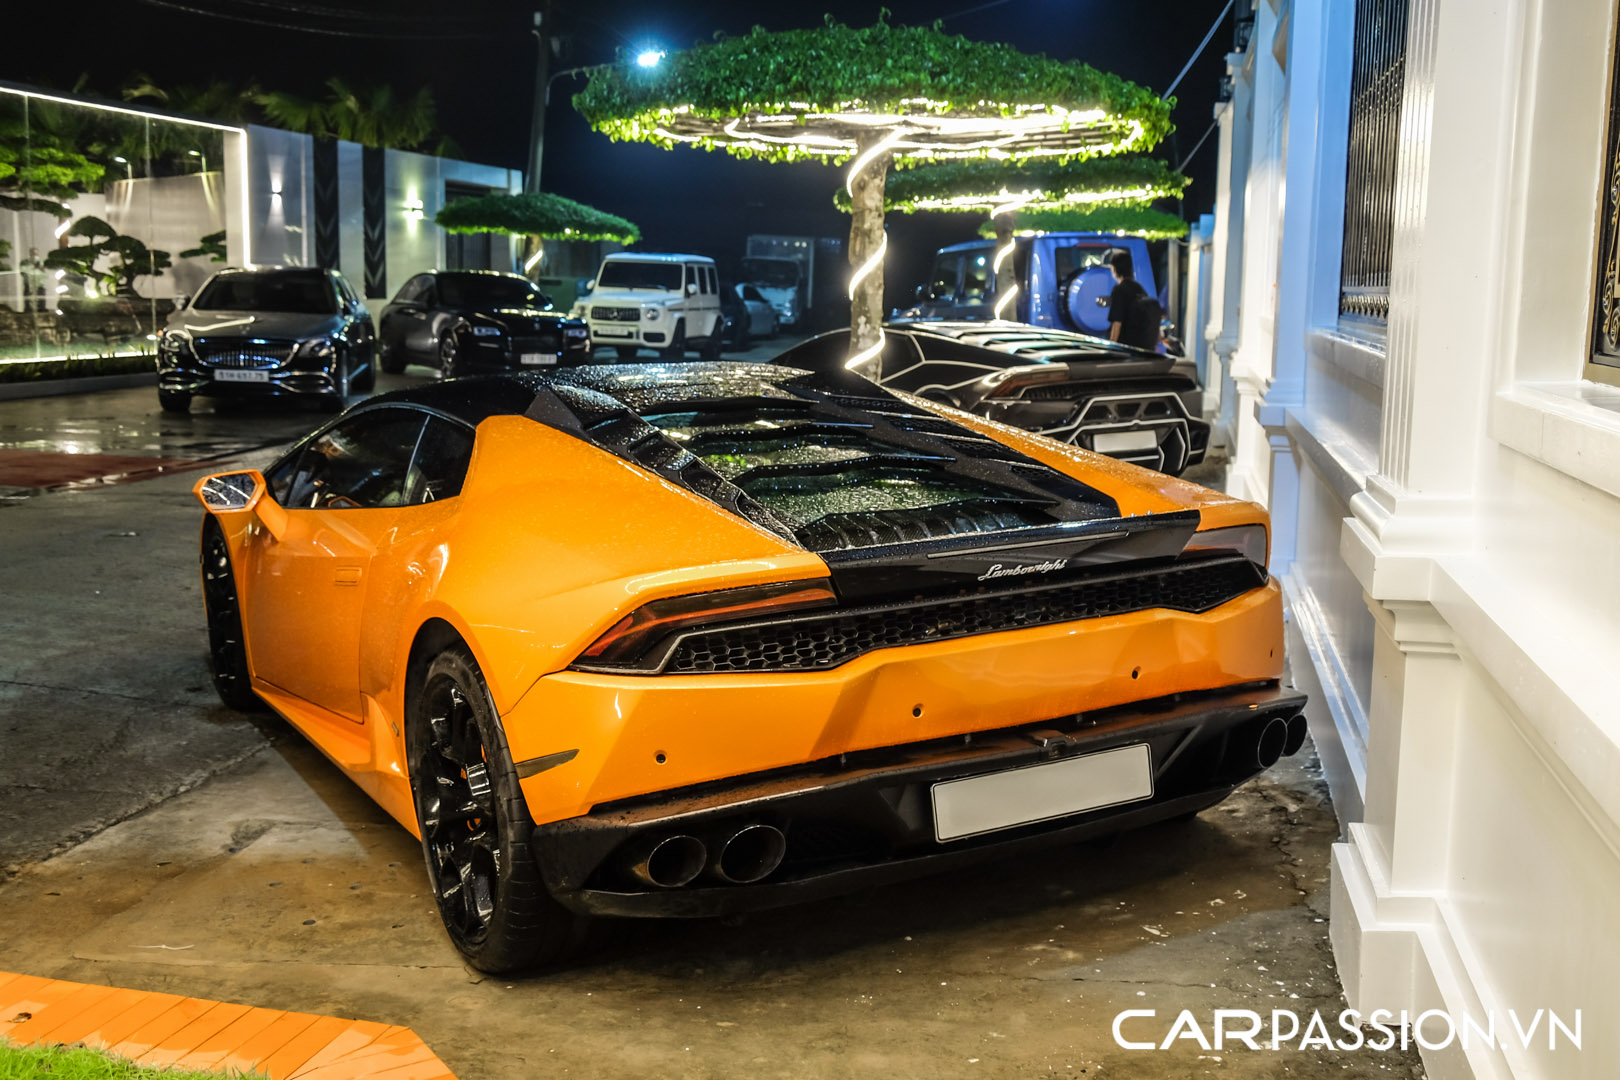 CP-Bộ đôi Lamborghini Huracan độ độc đáo16.jpg